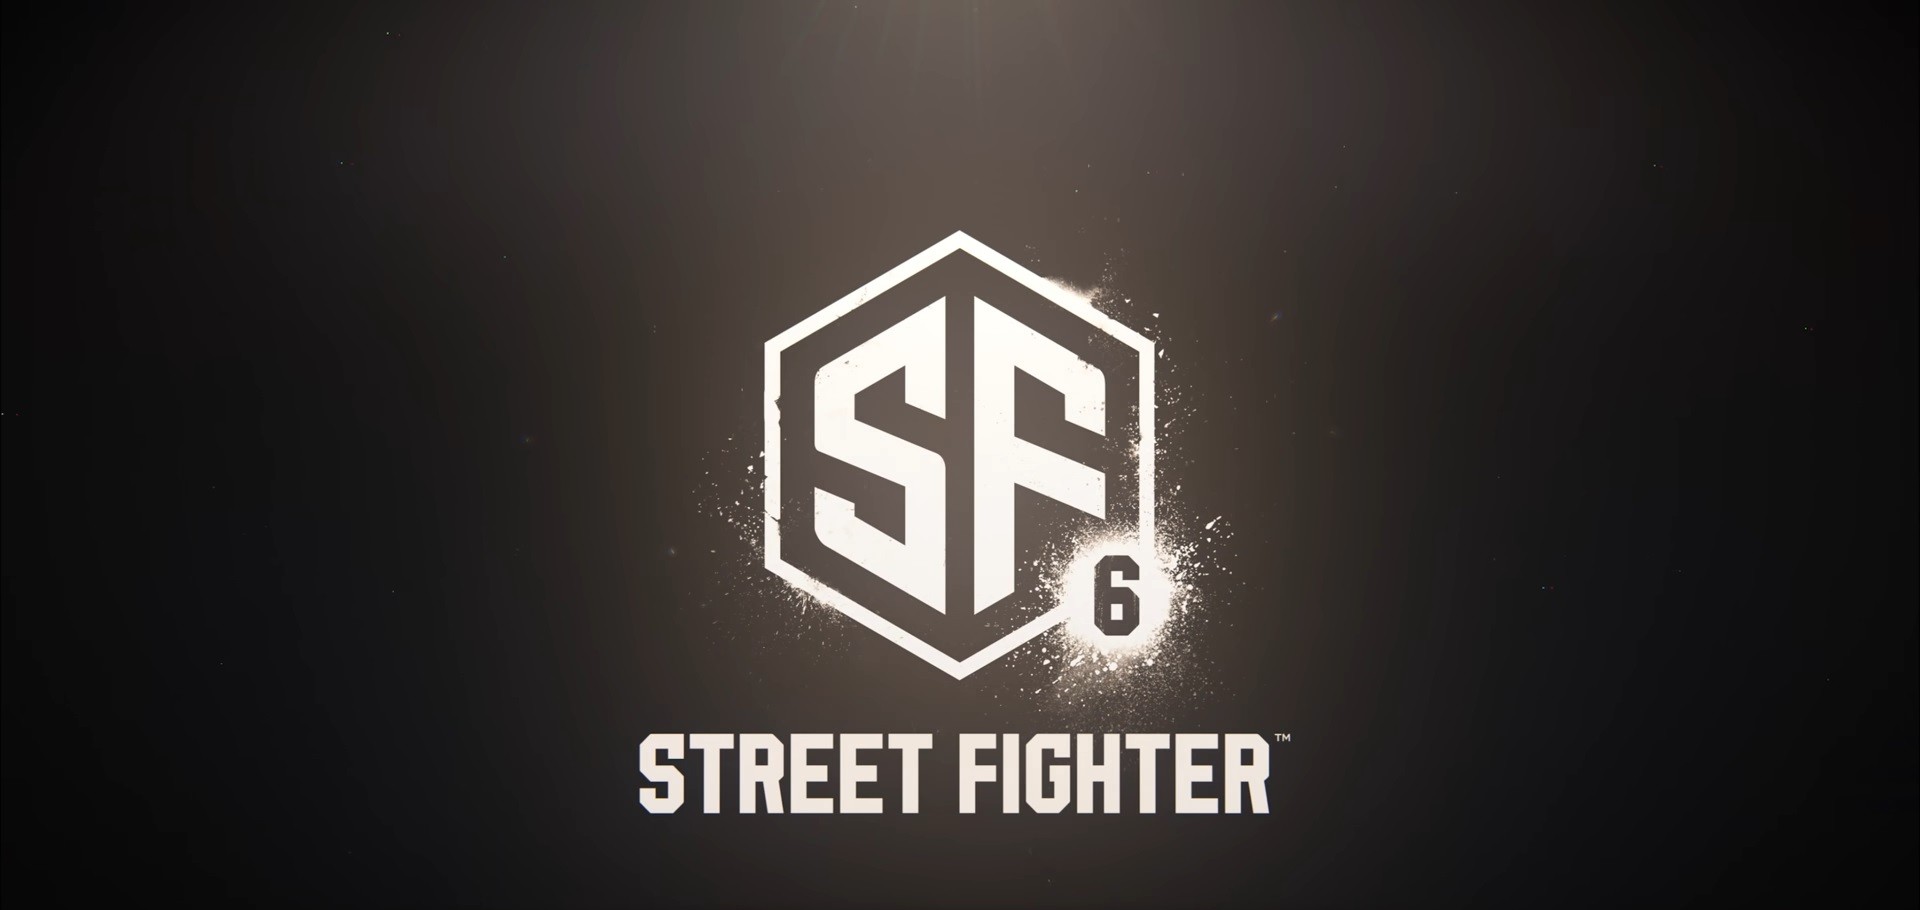 โลโก้ Street Fighter 6 บังเอิญคล้ายคลึงกับภาพใน Adobe Stock